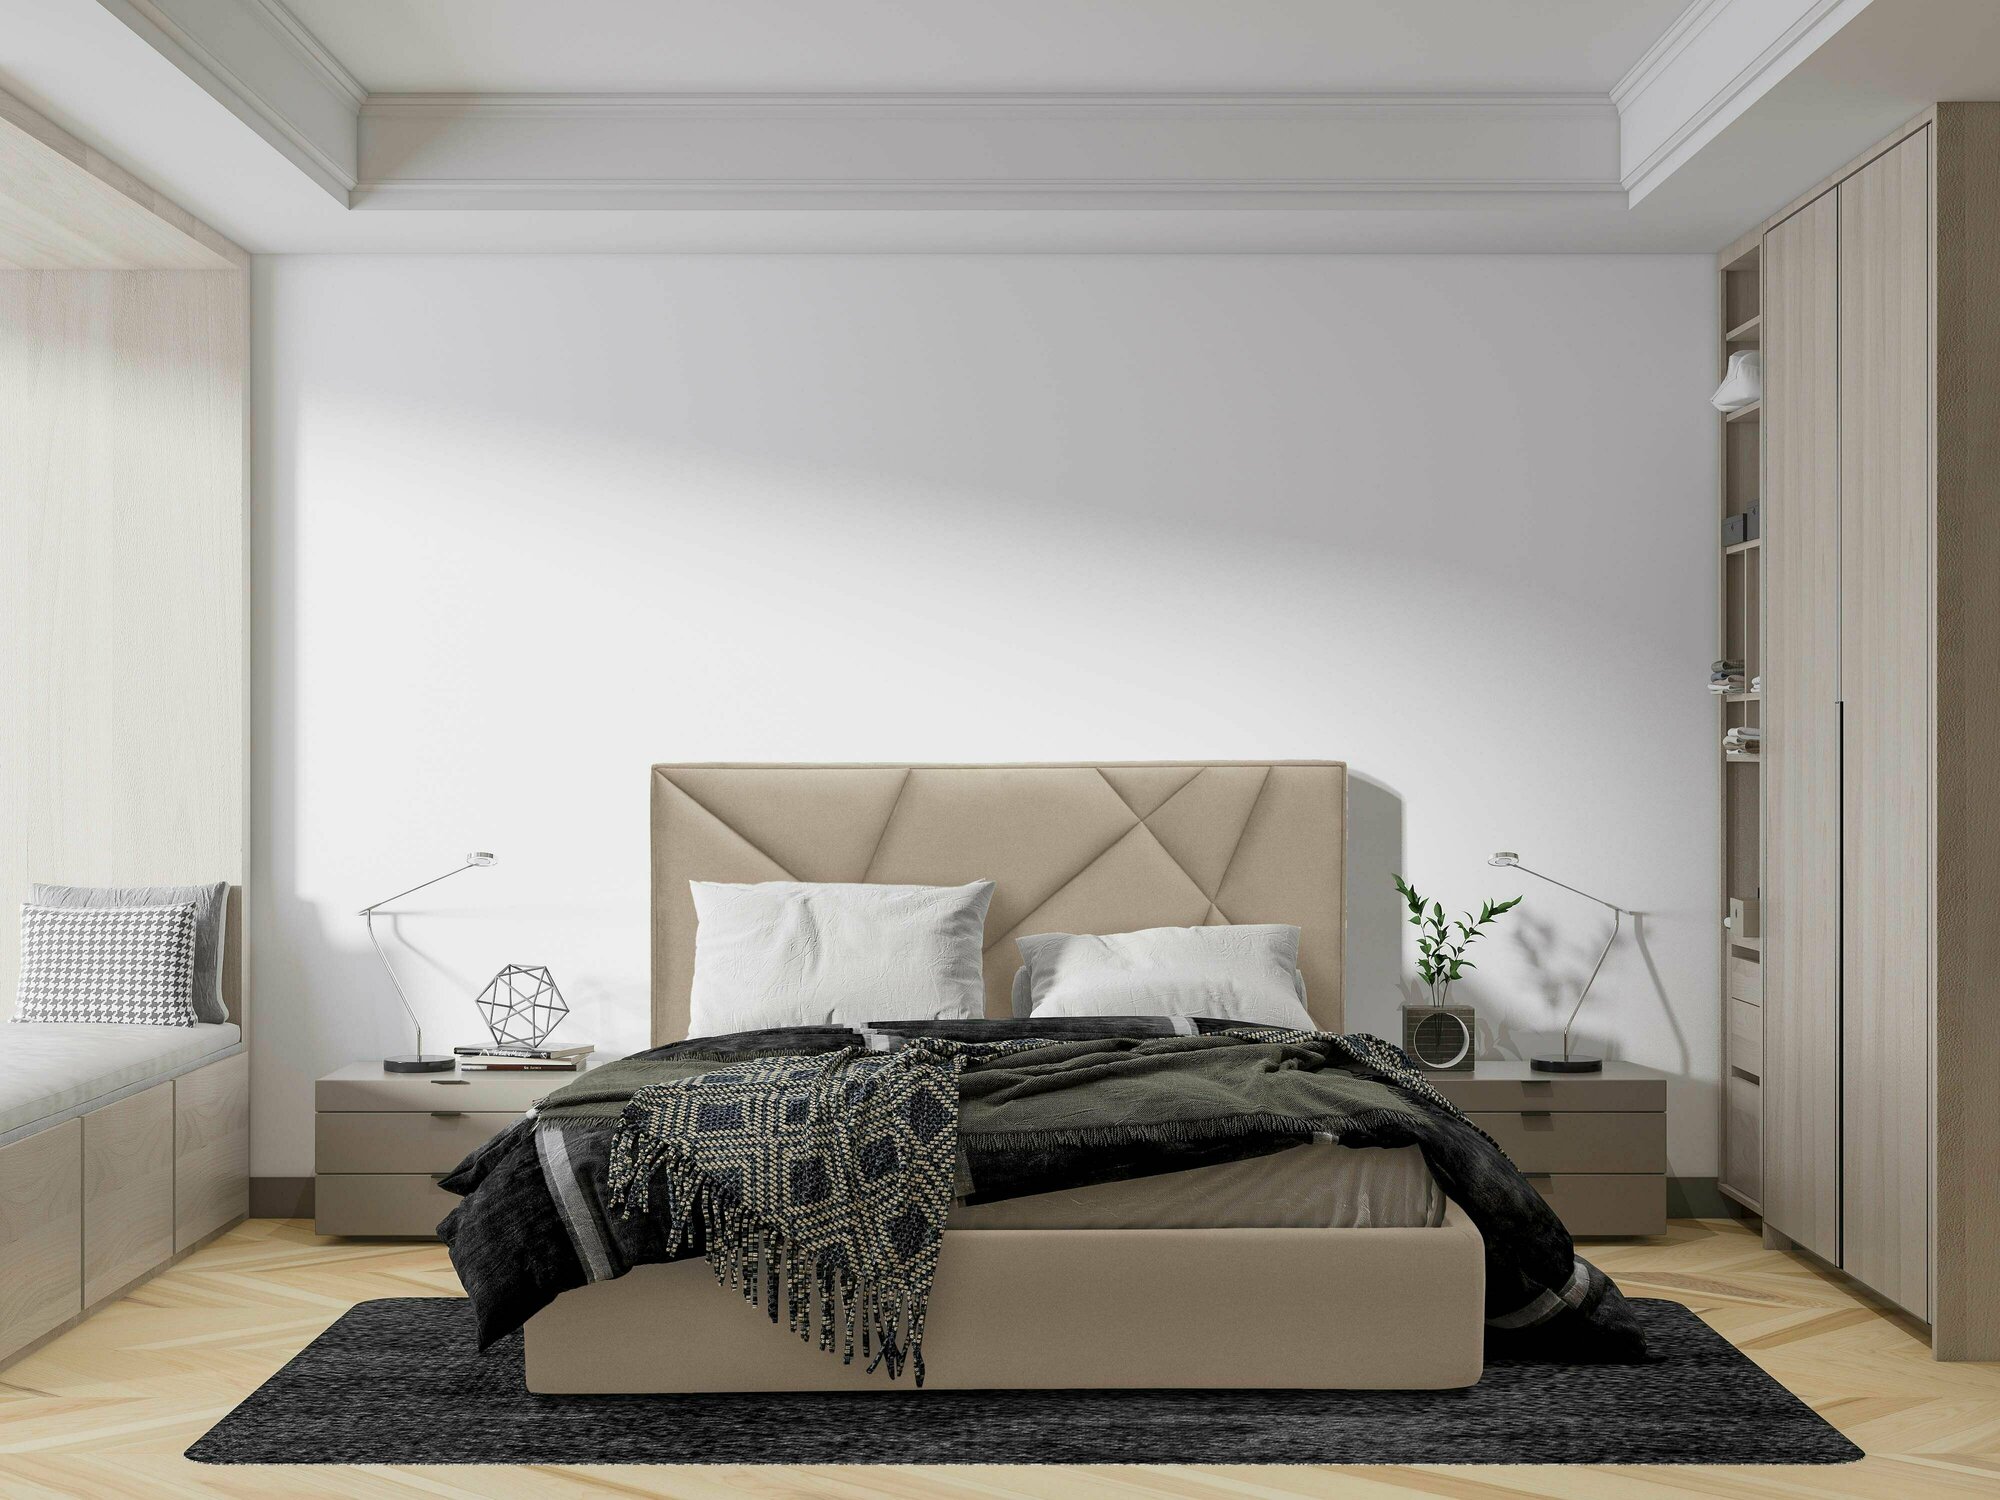 Двуспальная кровать "Деймон" с подъёмным механизмом, 200*140 см, YouComf